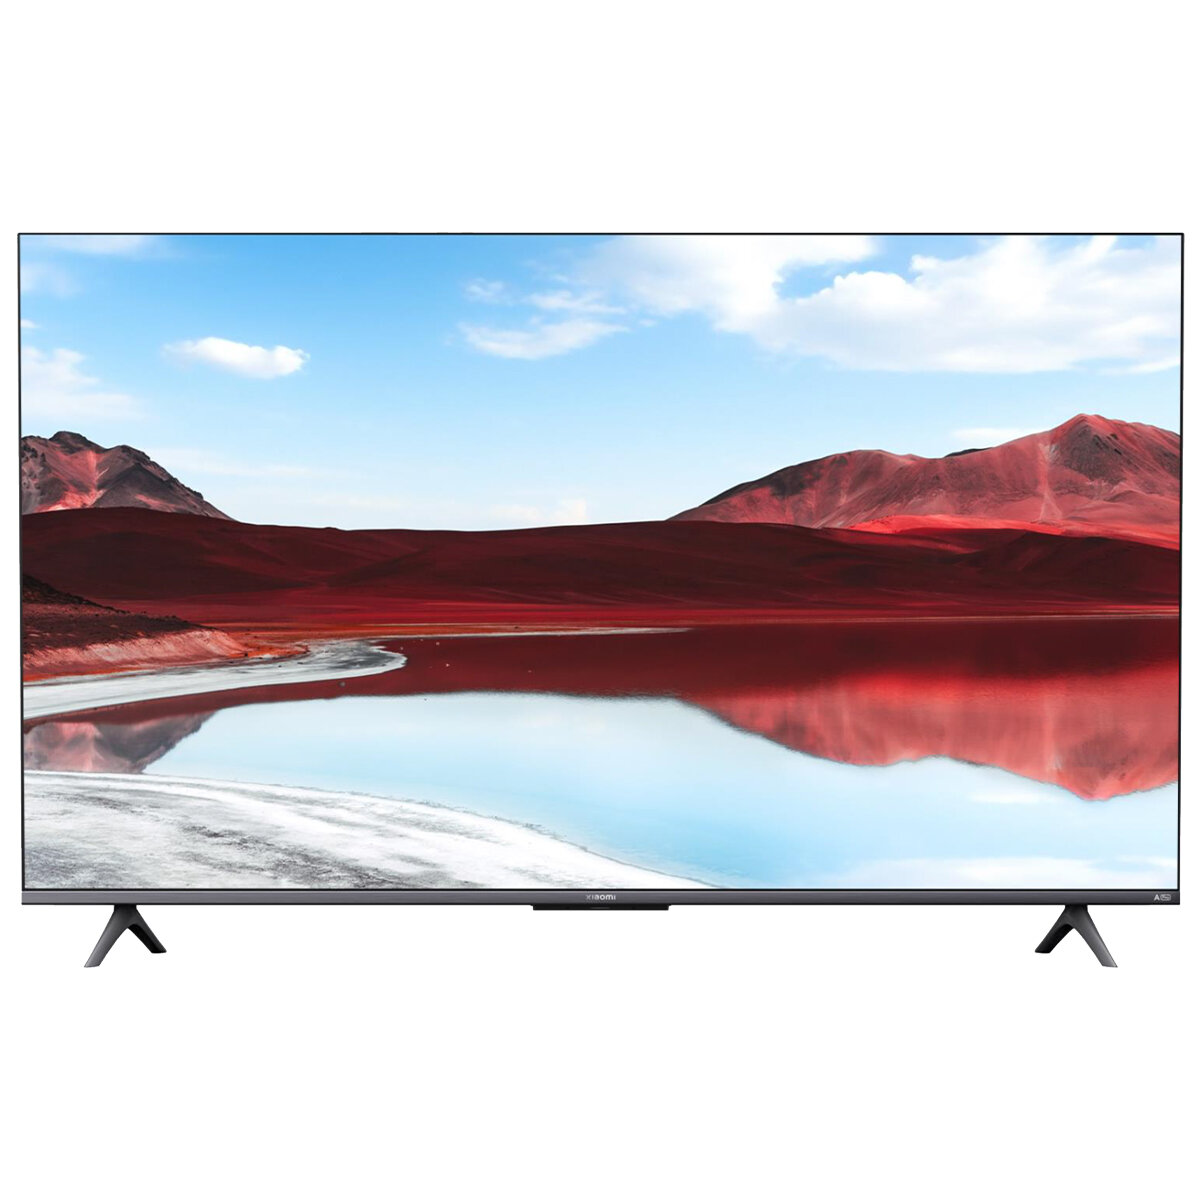 Телевизор Xiaomi TV A Pro 55" 2025,4K QLED Smart TV, черный